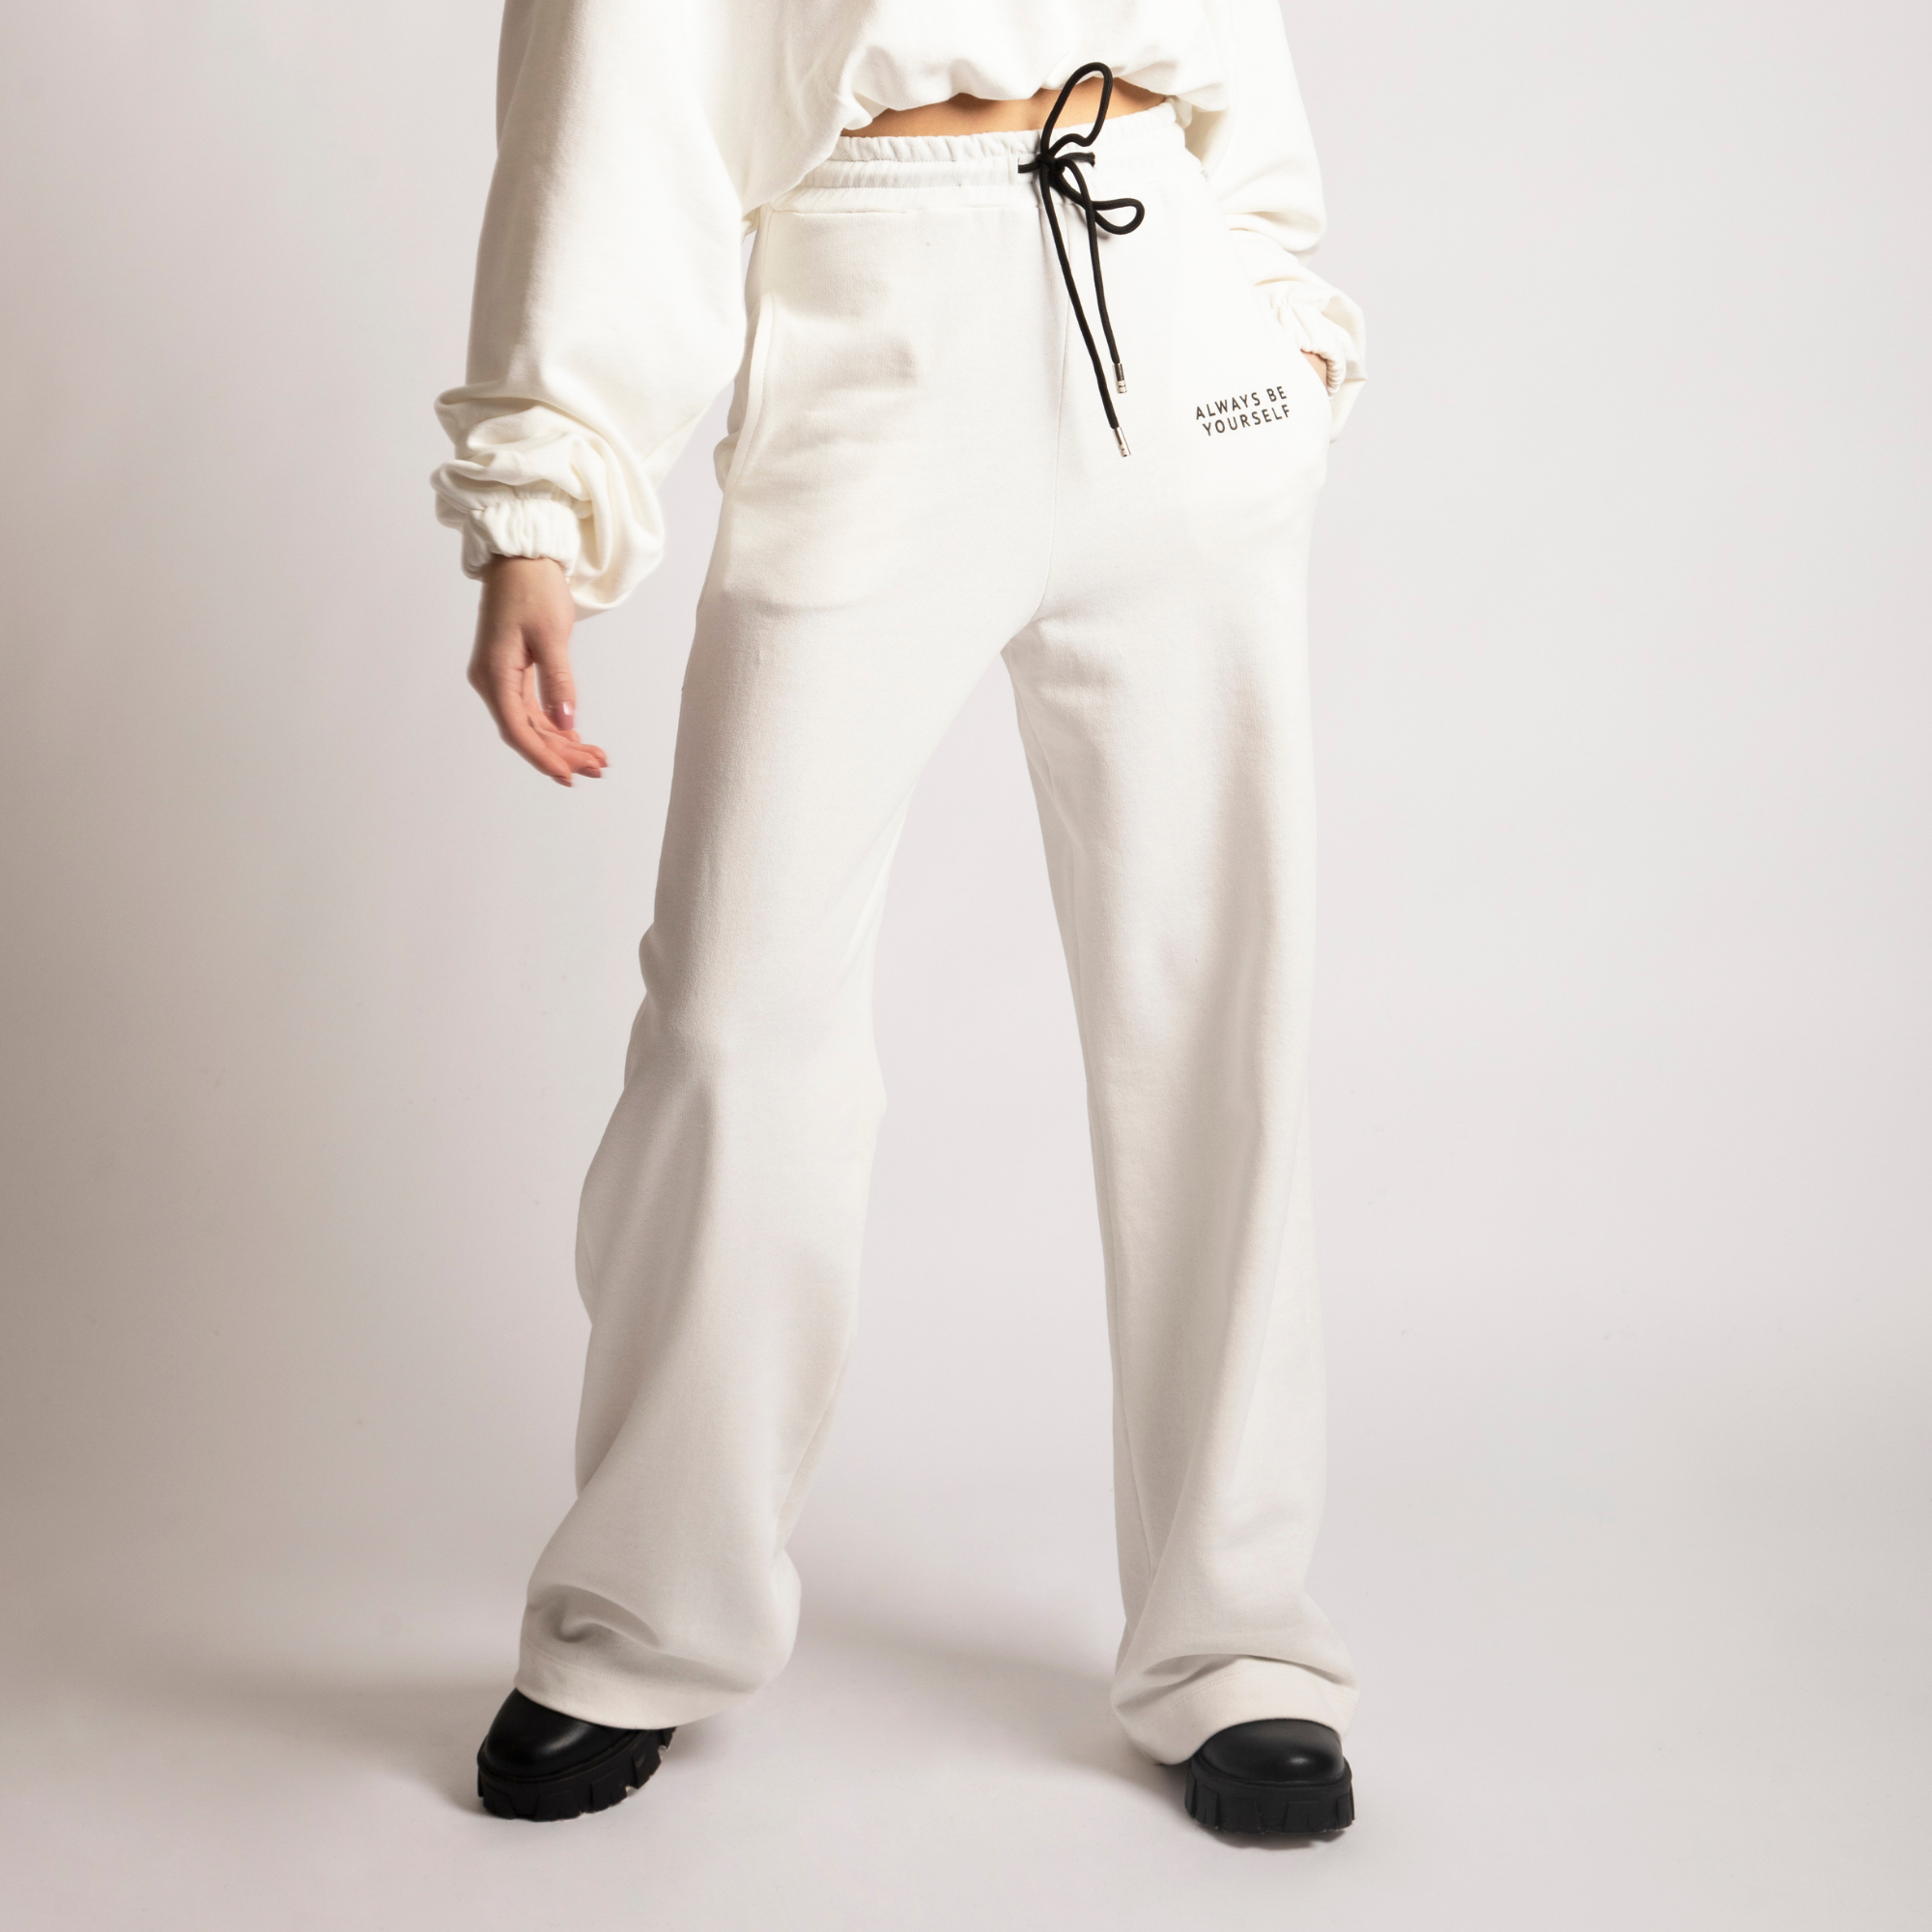 Tuta Donna felpa pantalone coordinato Shiki in Cotone colore Bianco Panna esprez